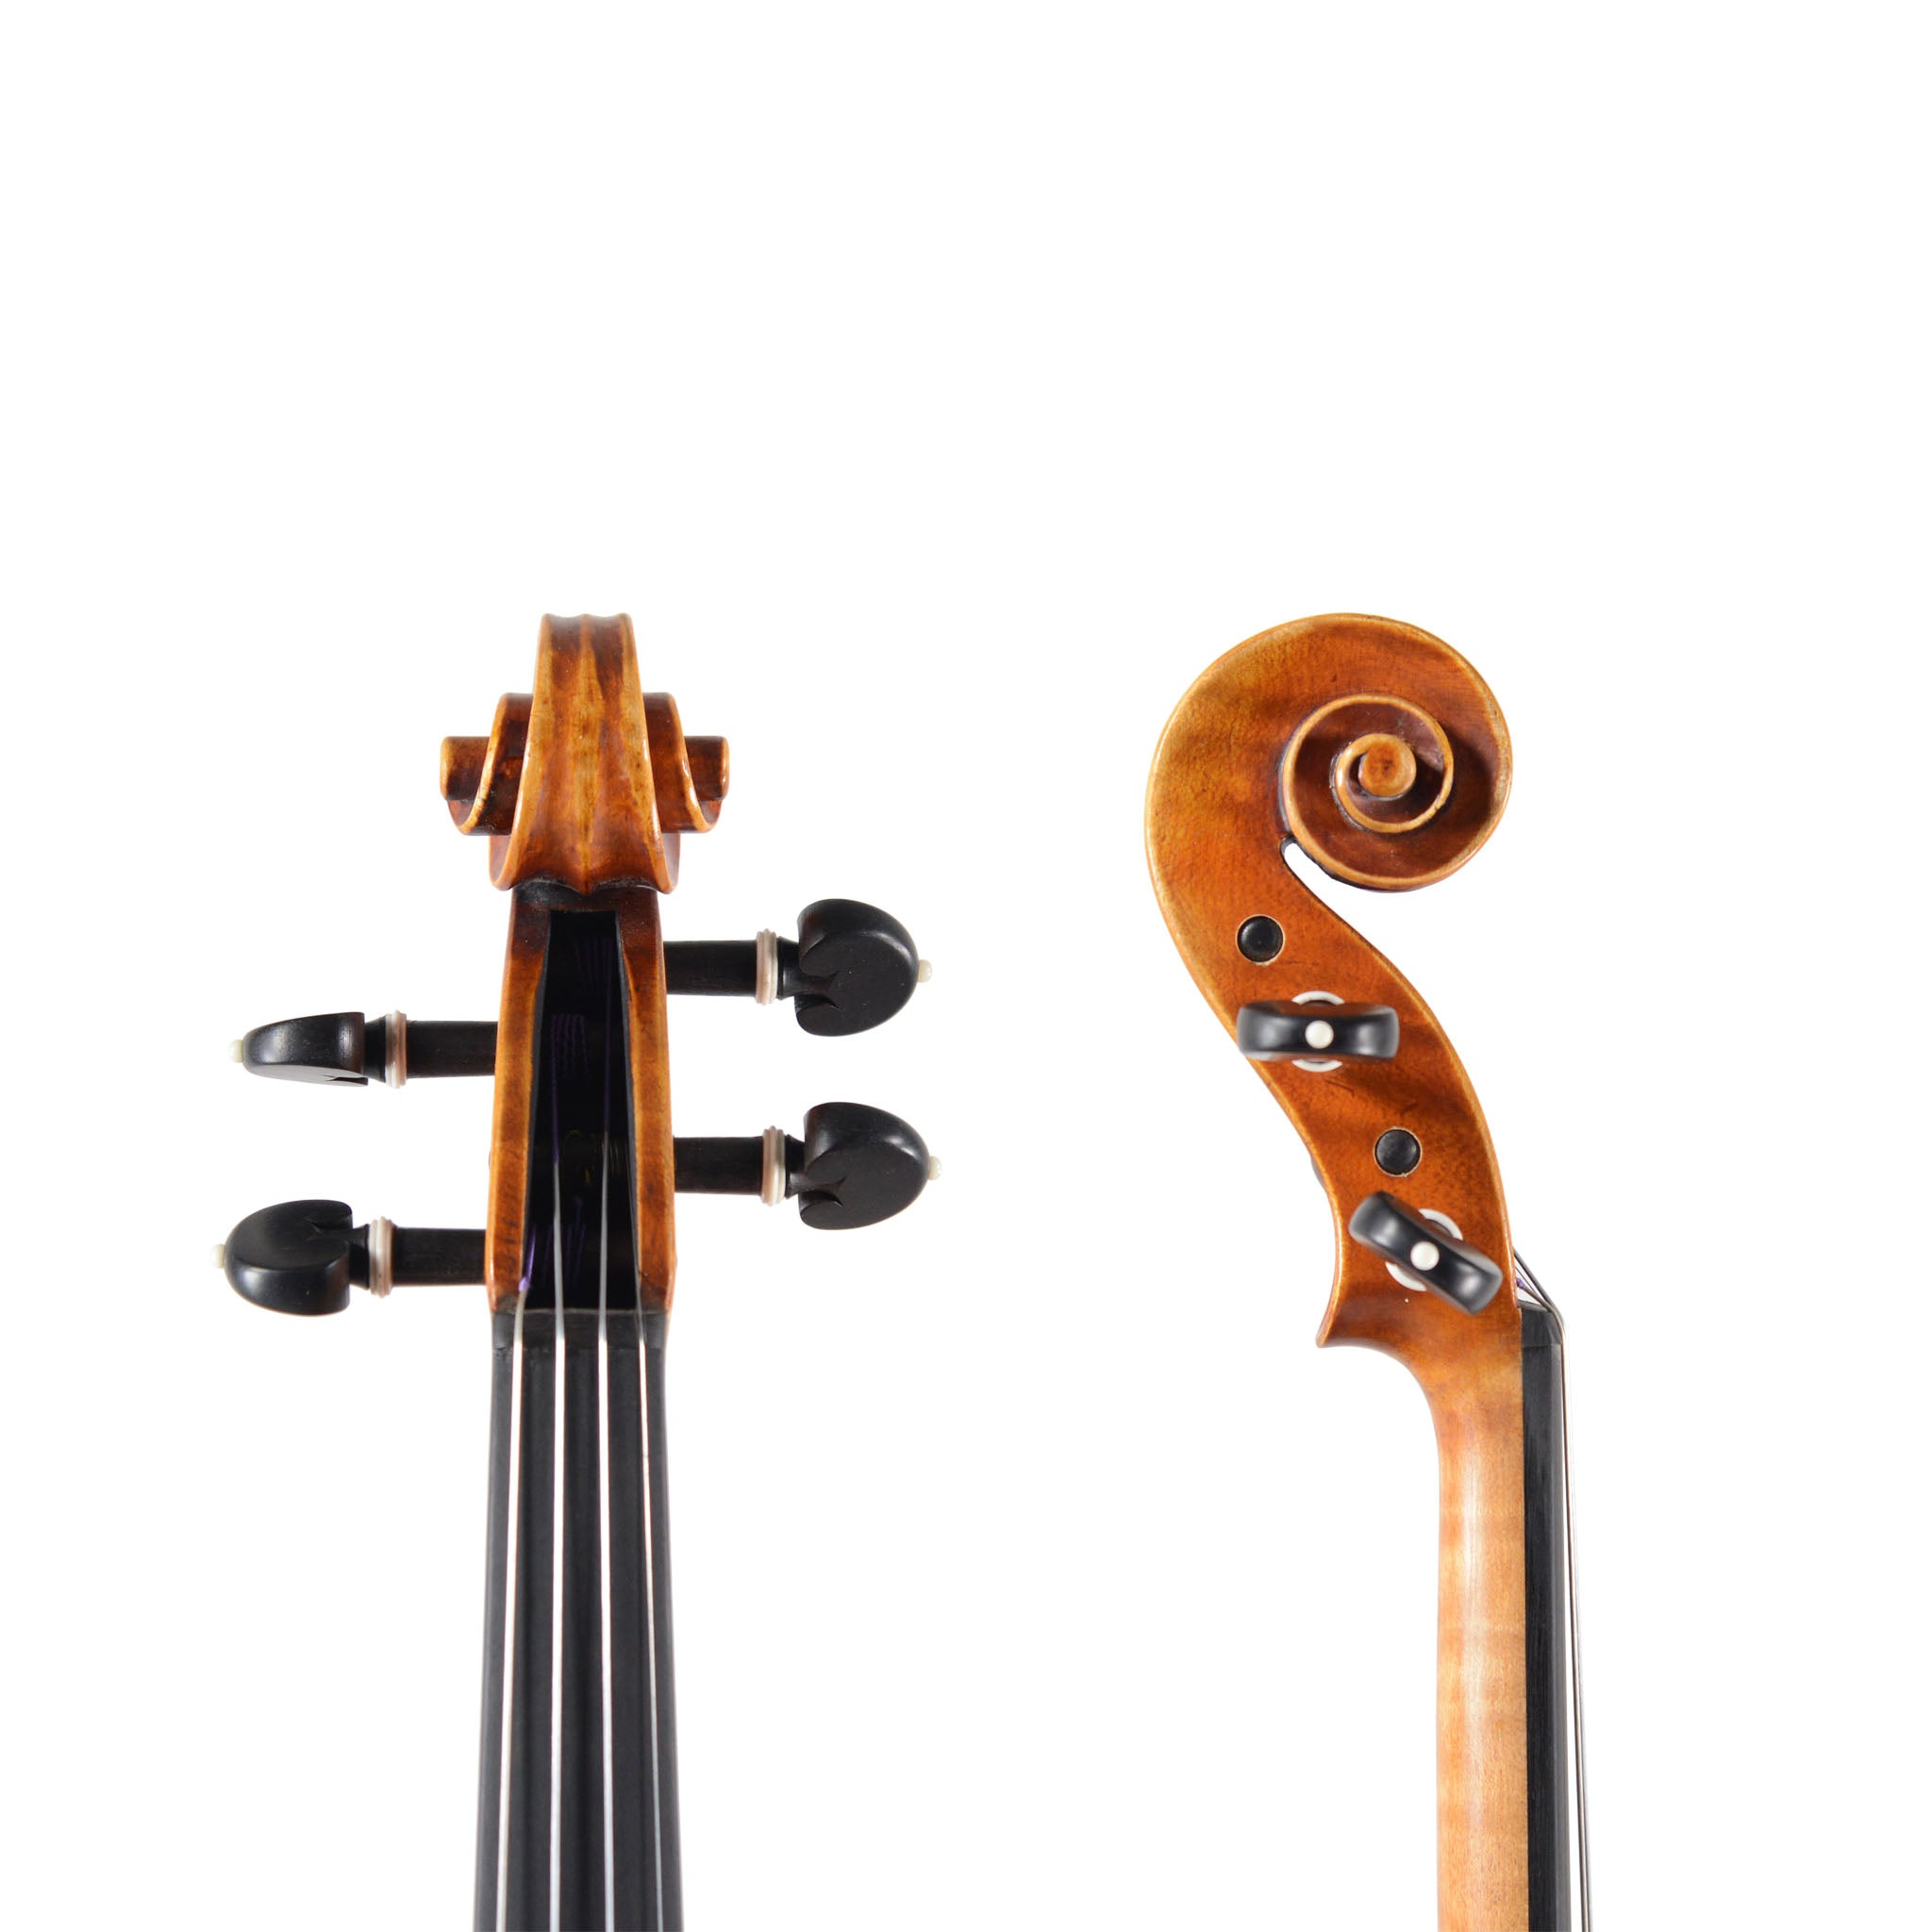 B-stock Holstein Workshop Soil Stradivarius Violin